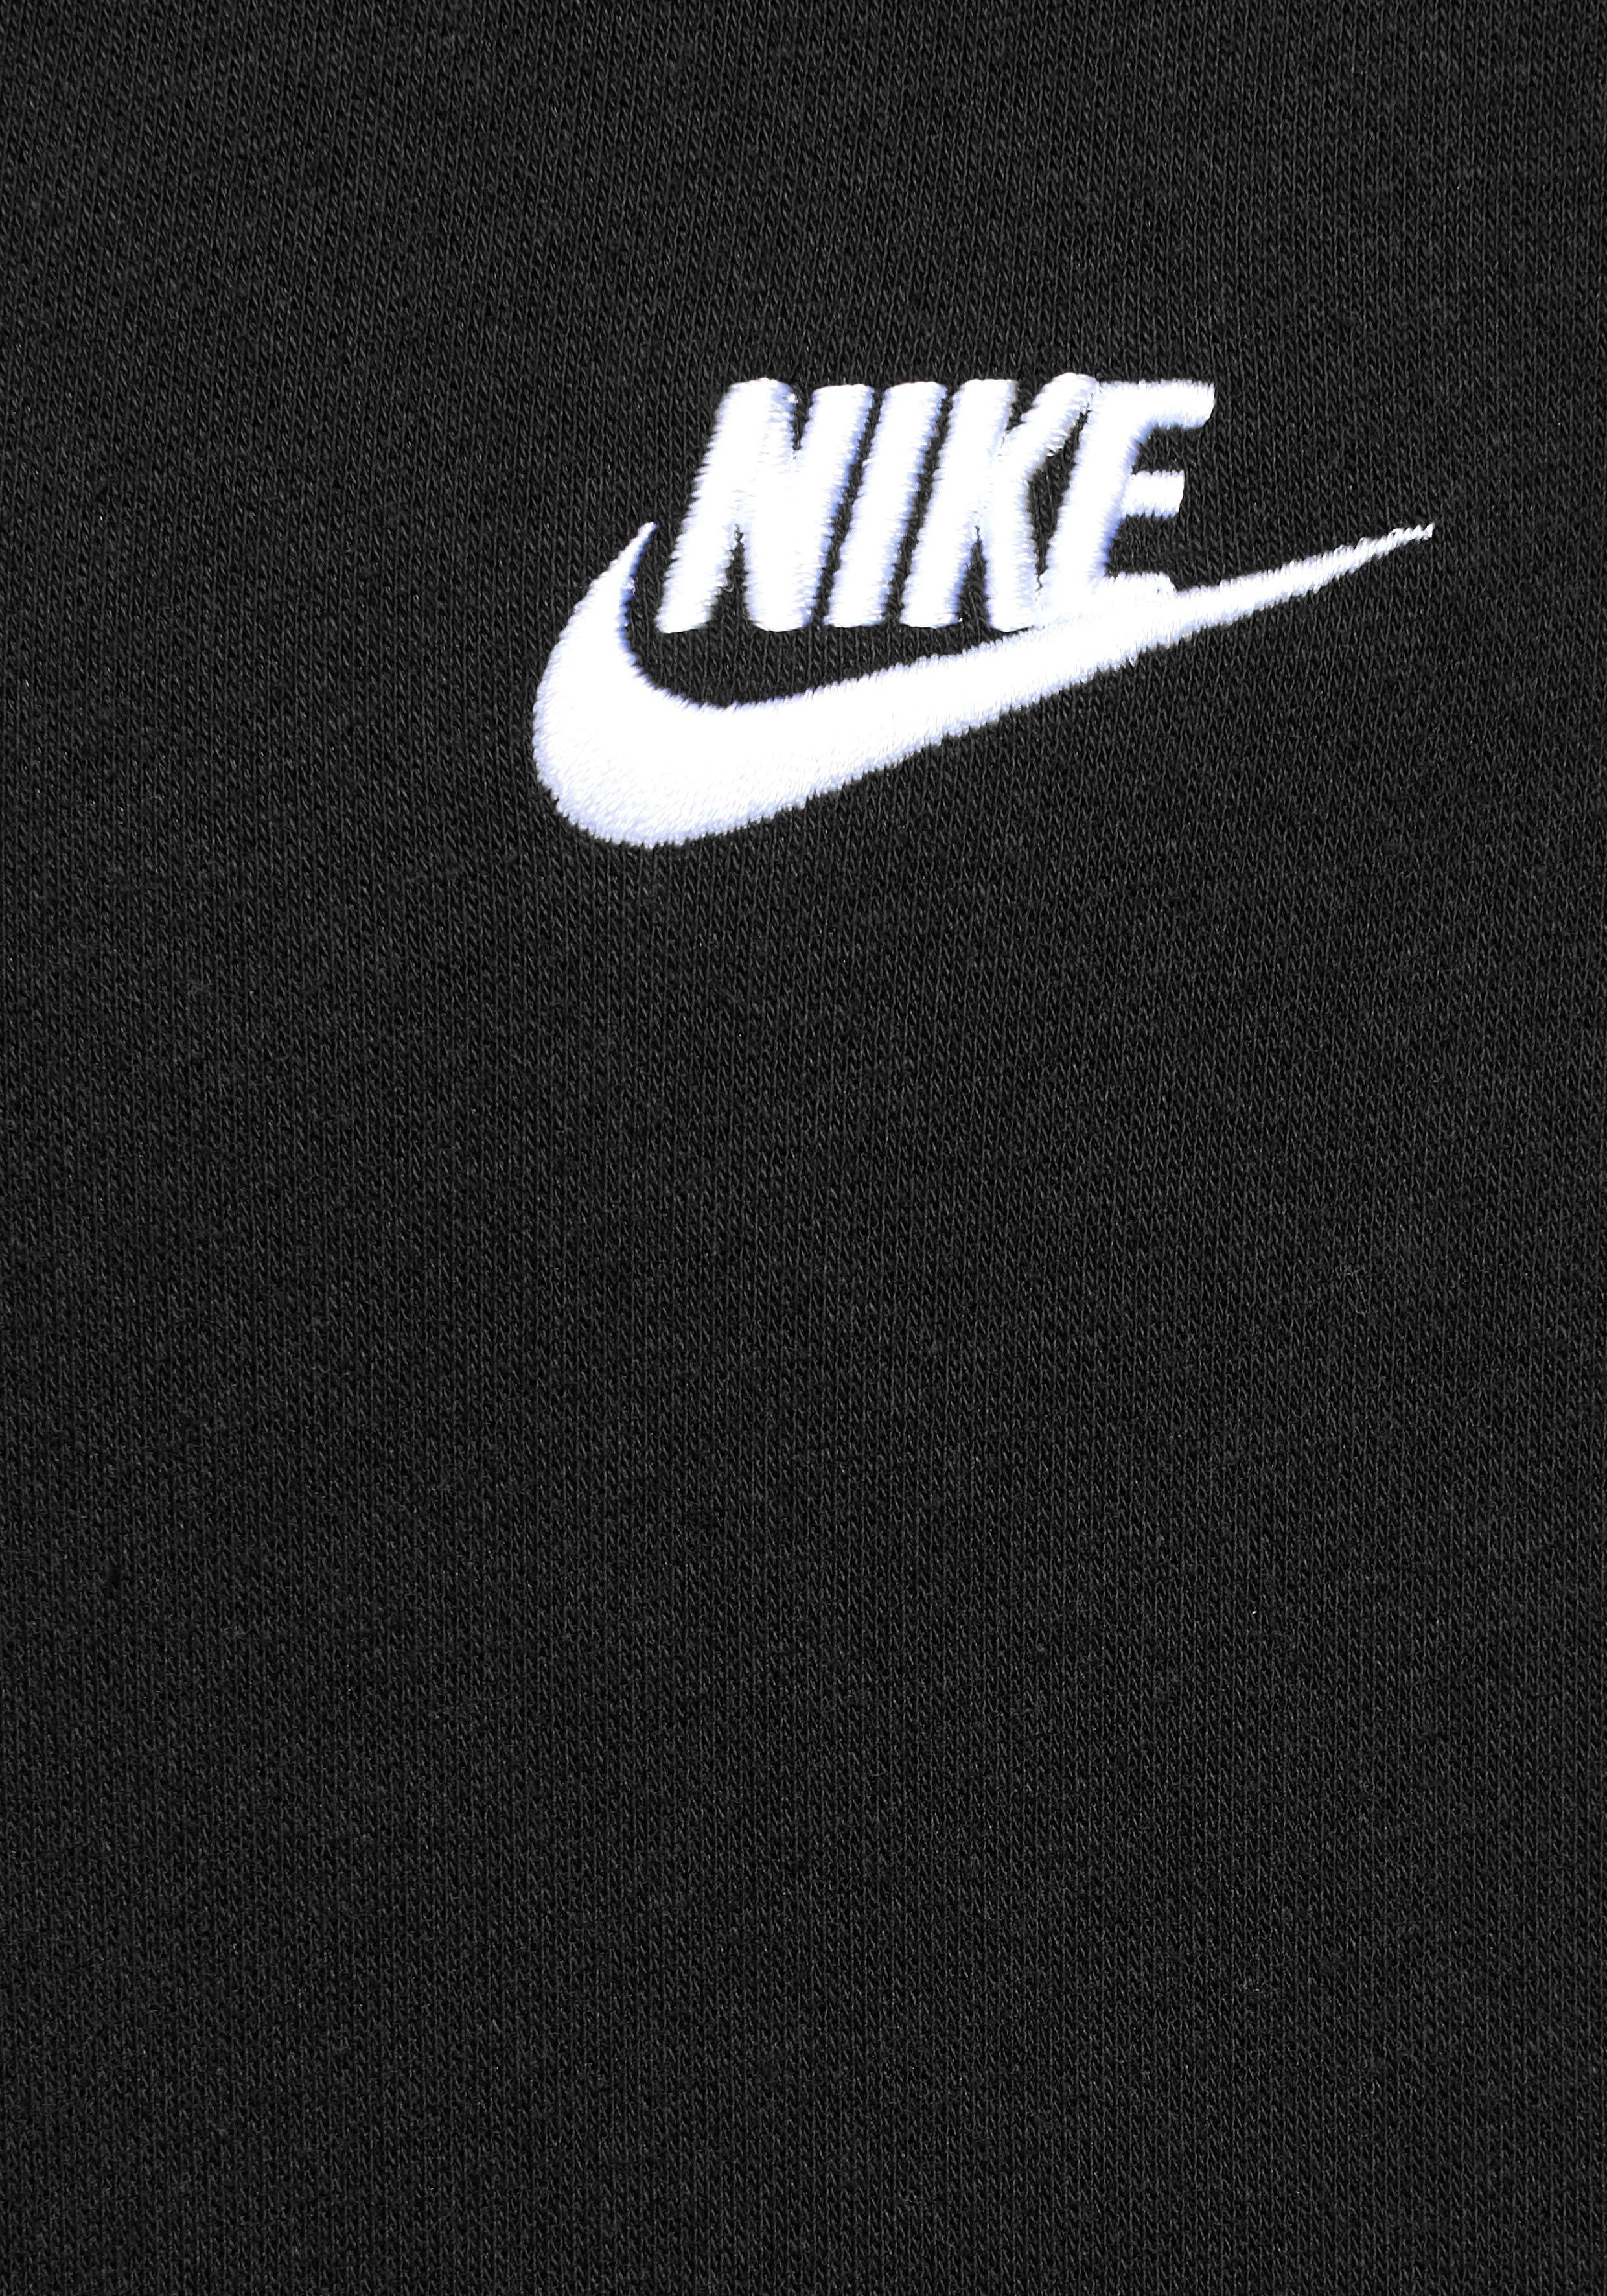 Sportswear Club Nike Fleece Hoodie Men's Full-Zip schwarz Sweatjacke